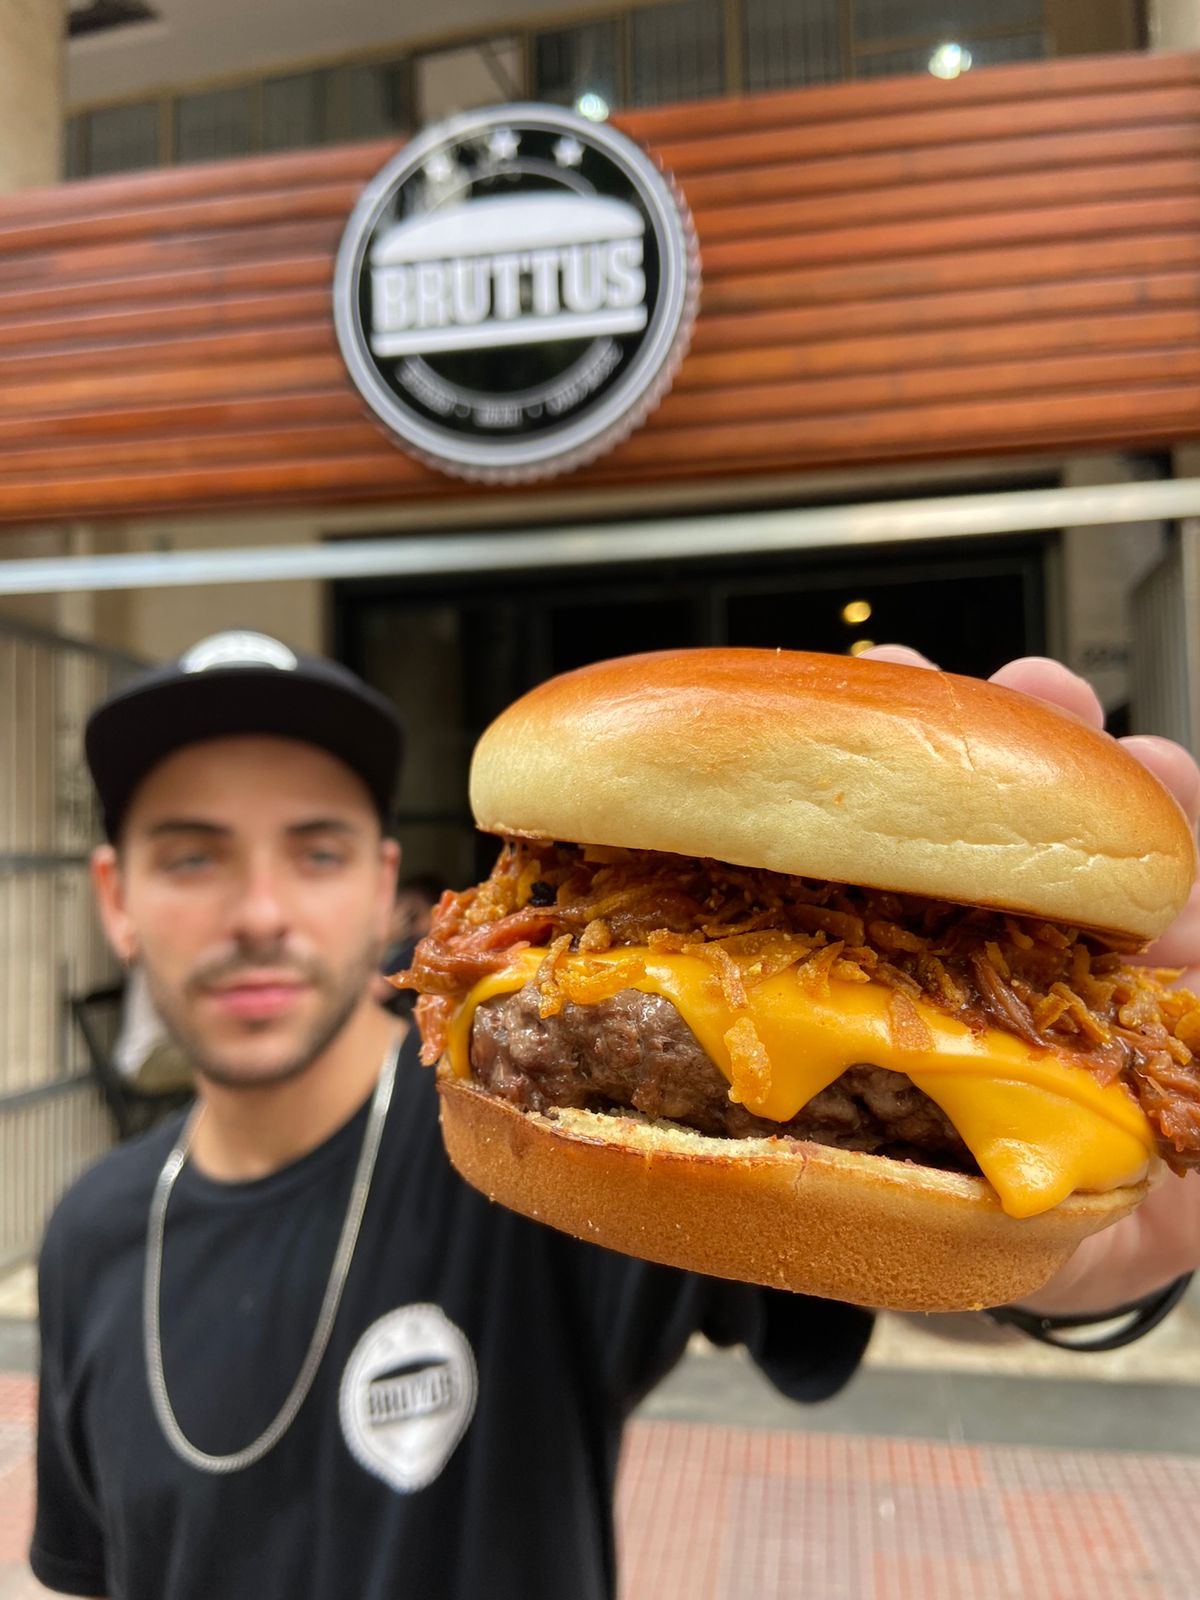 Bruttus Burger - República